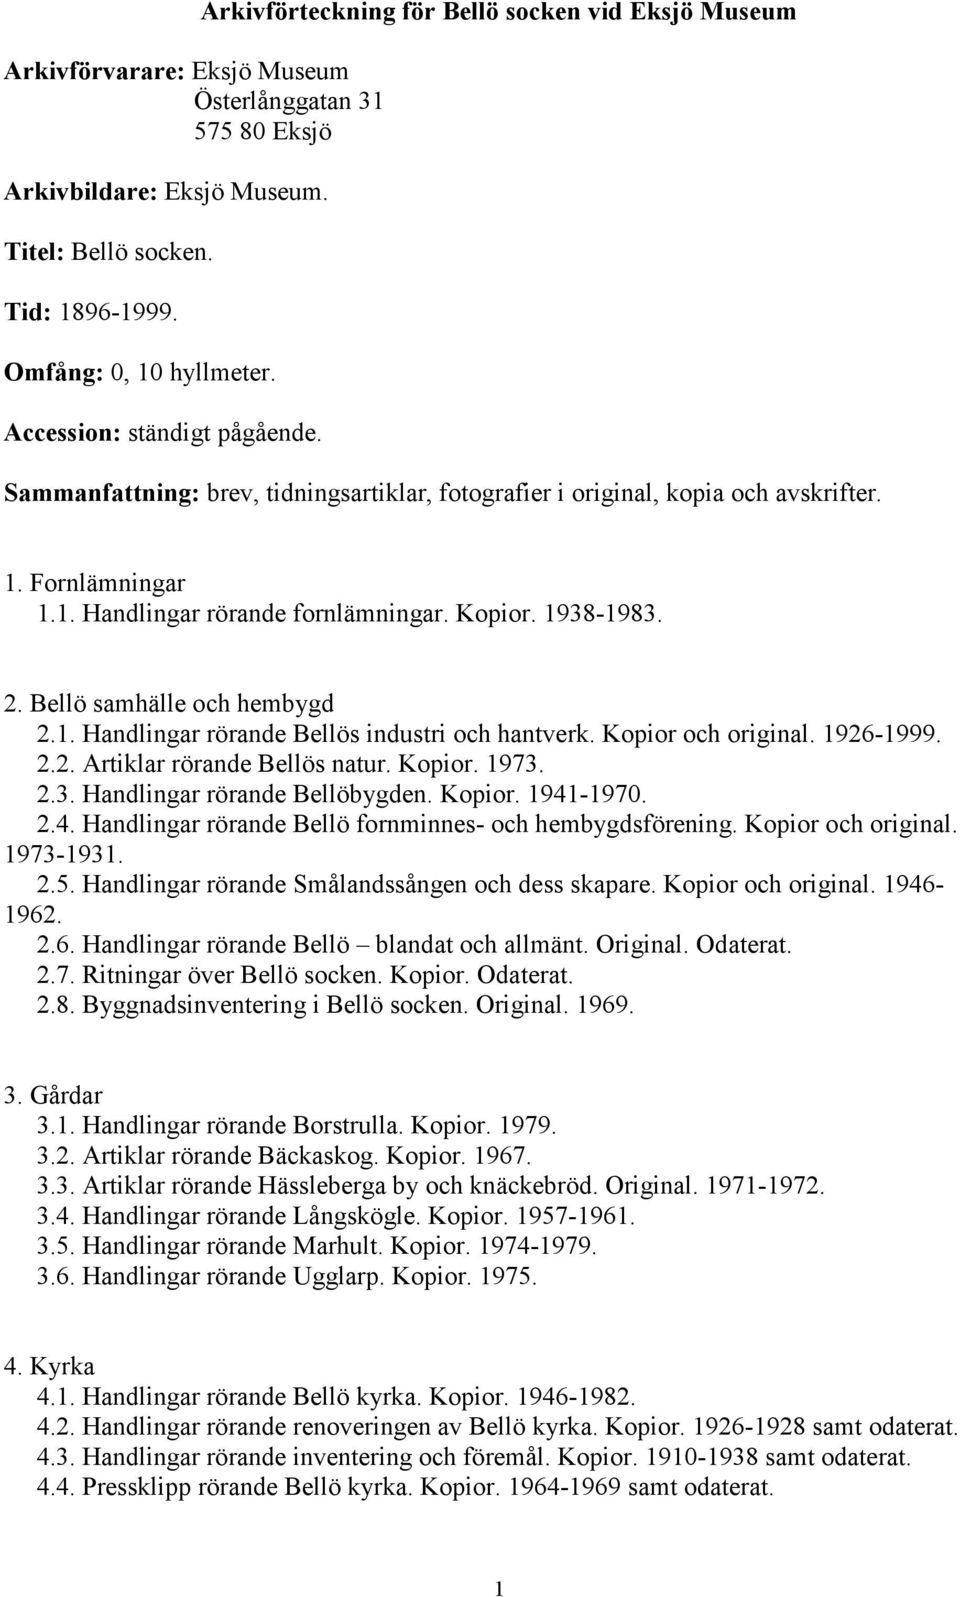 1938-1983. 2. Bellö samhälle och hembygd 2.1. Handlingar rörande Bellös industri och hantverk. Kopior och original. 1926-1999. 2.2. Artiklar rörande Bellös natur. Kopior. 1973. 2.3. Handlingar rörande Bellöbygden.